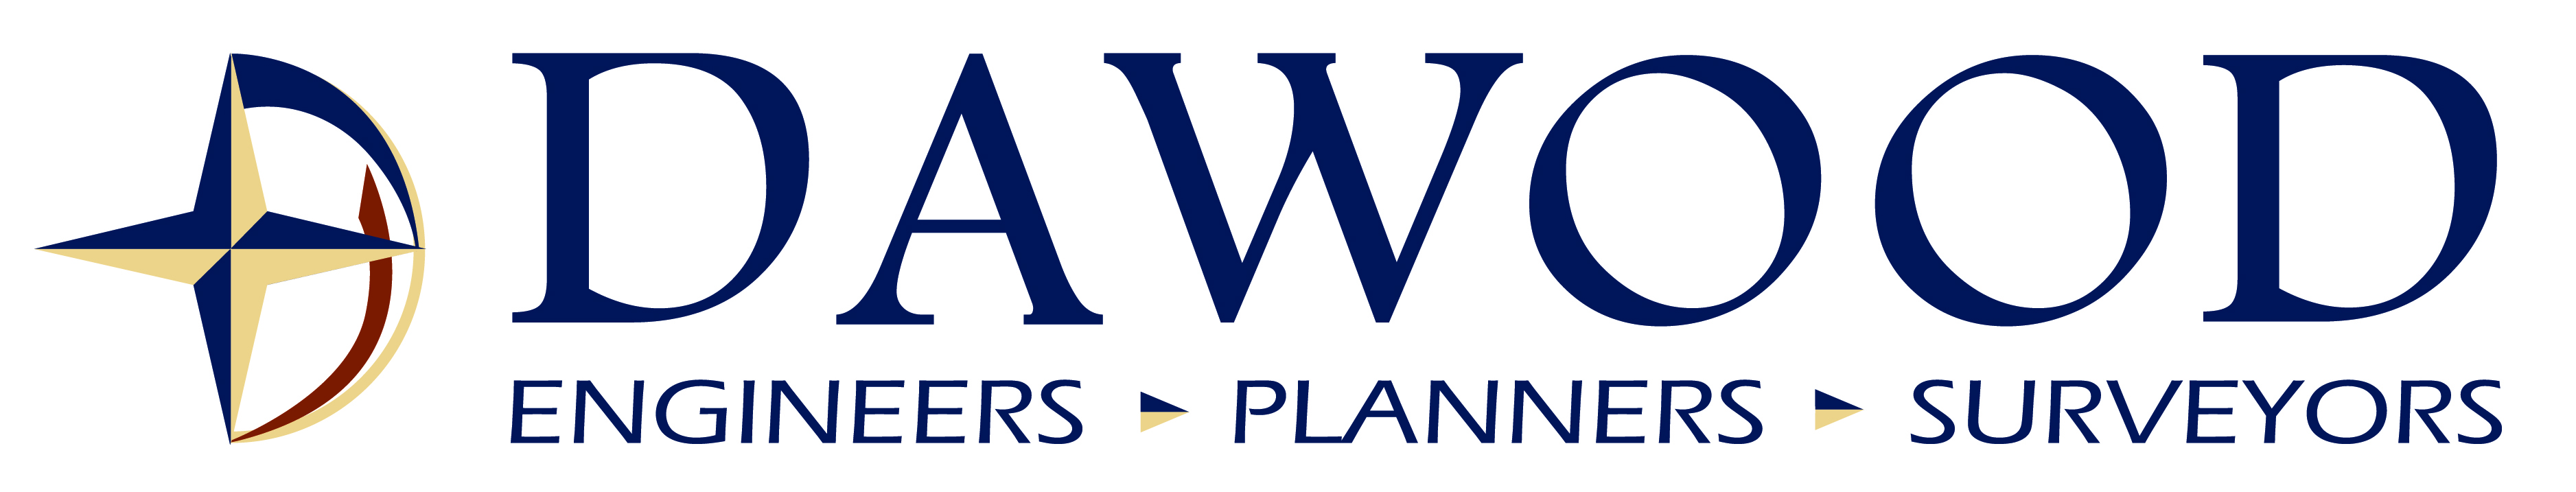 Dawood Engineering - Engineers - Planners - Surveyors - logo